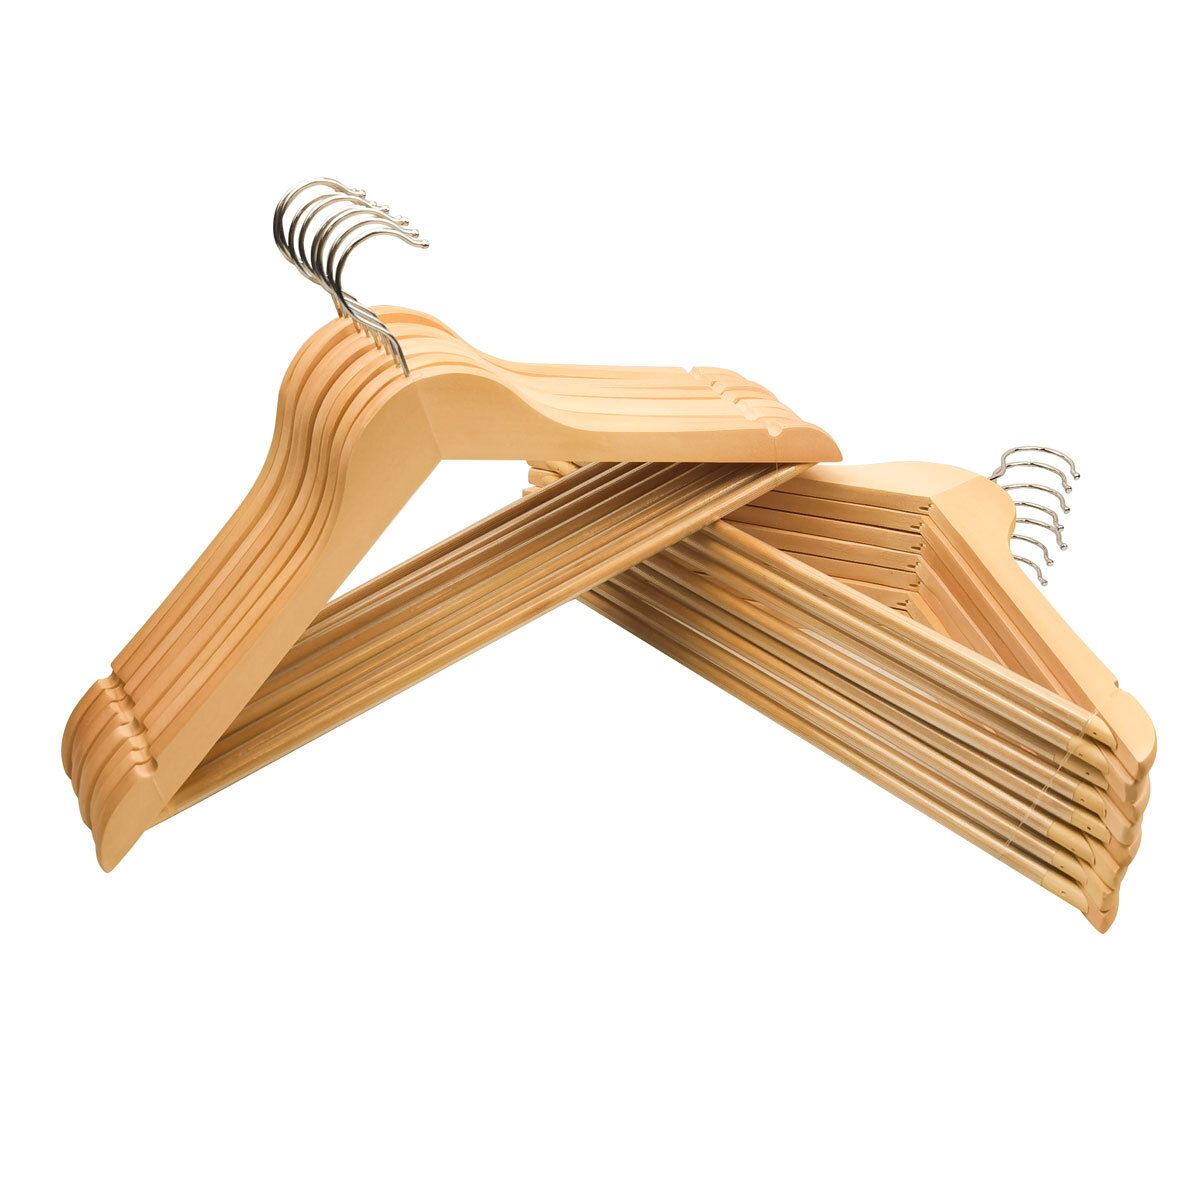 OMT Non-Slip Wood Hangers in Maple - 16 Pack